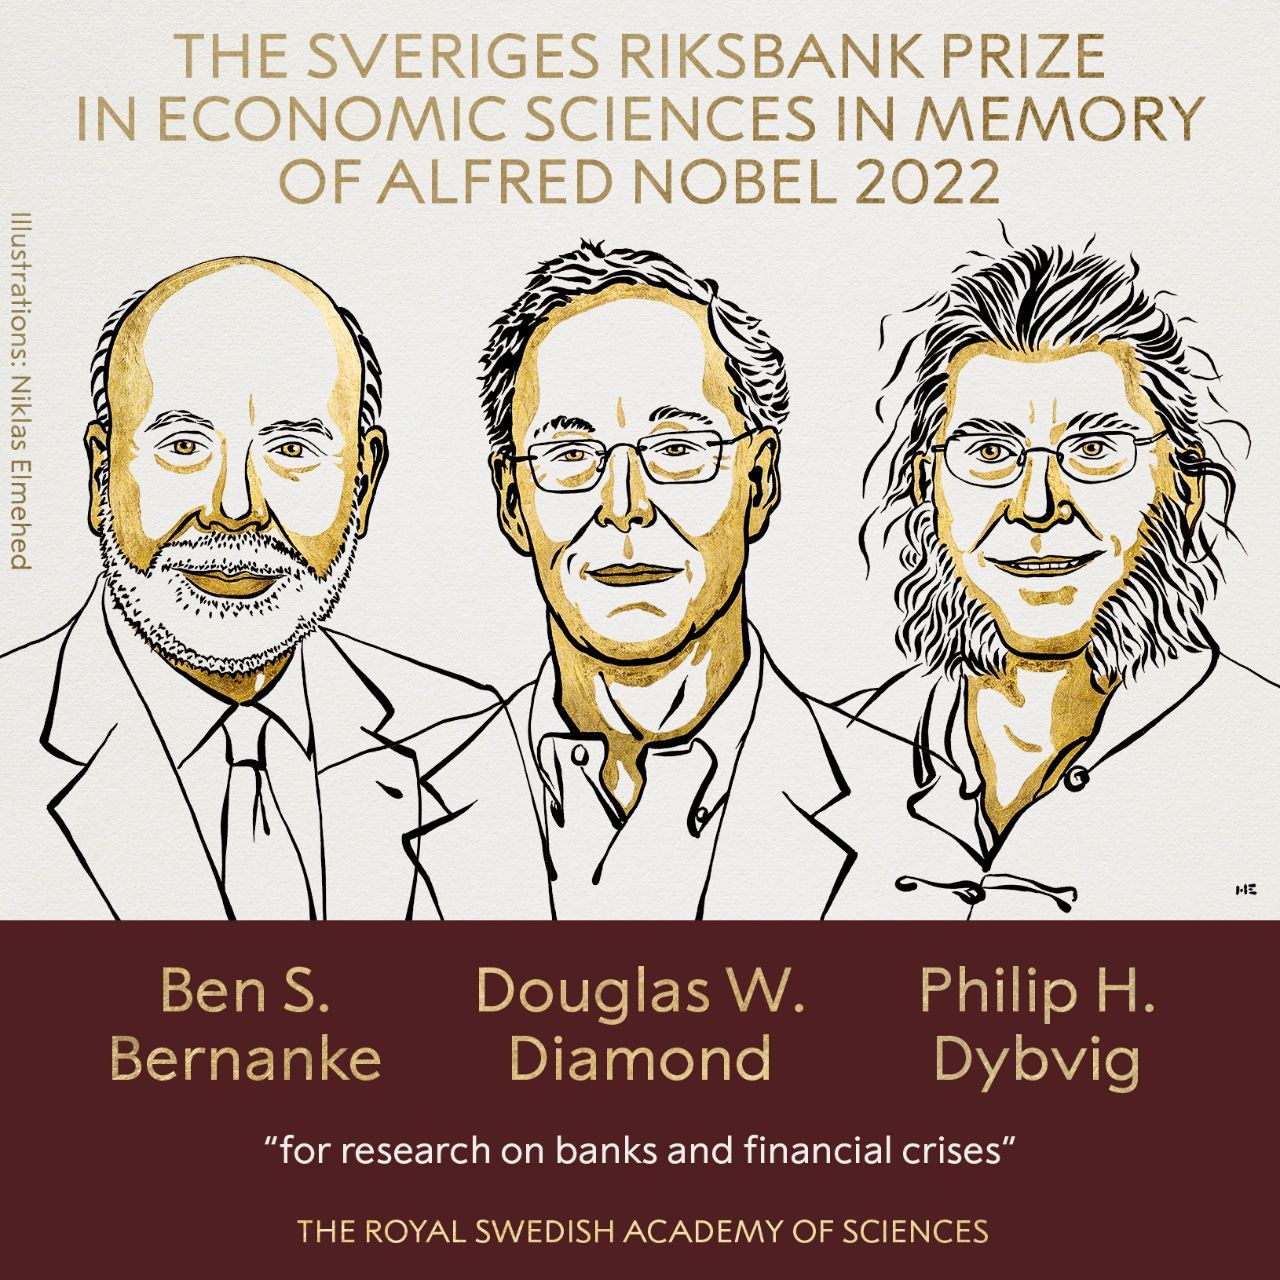 برنانکی، دایموند و دیبویگ برنده جایزه نوبل اقتصادی ۲۰۲۲ شدند